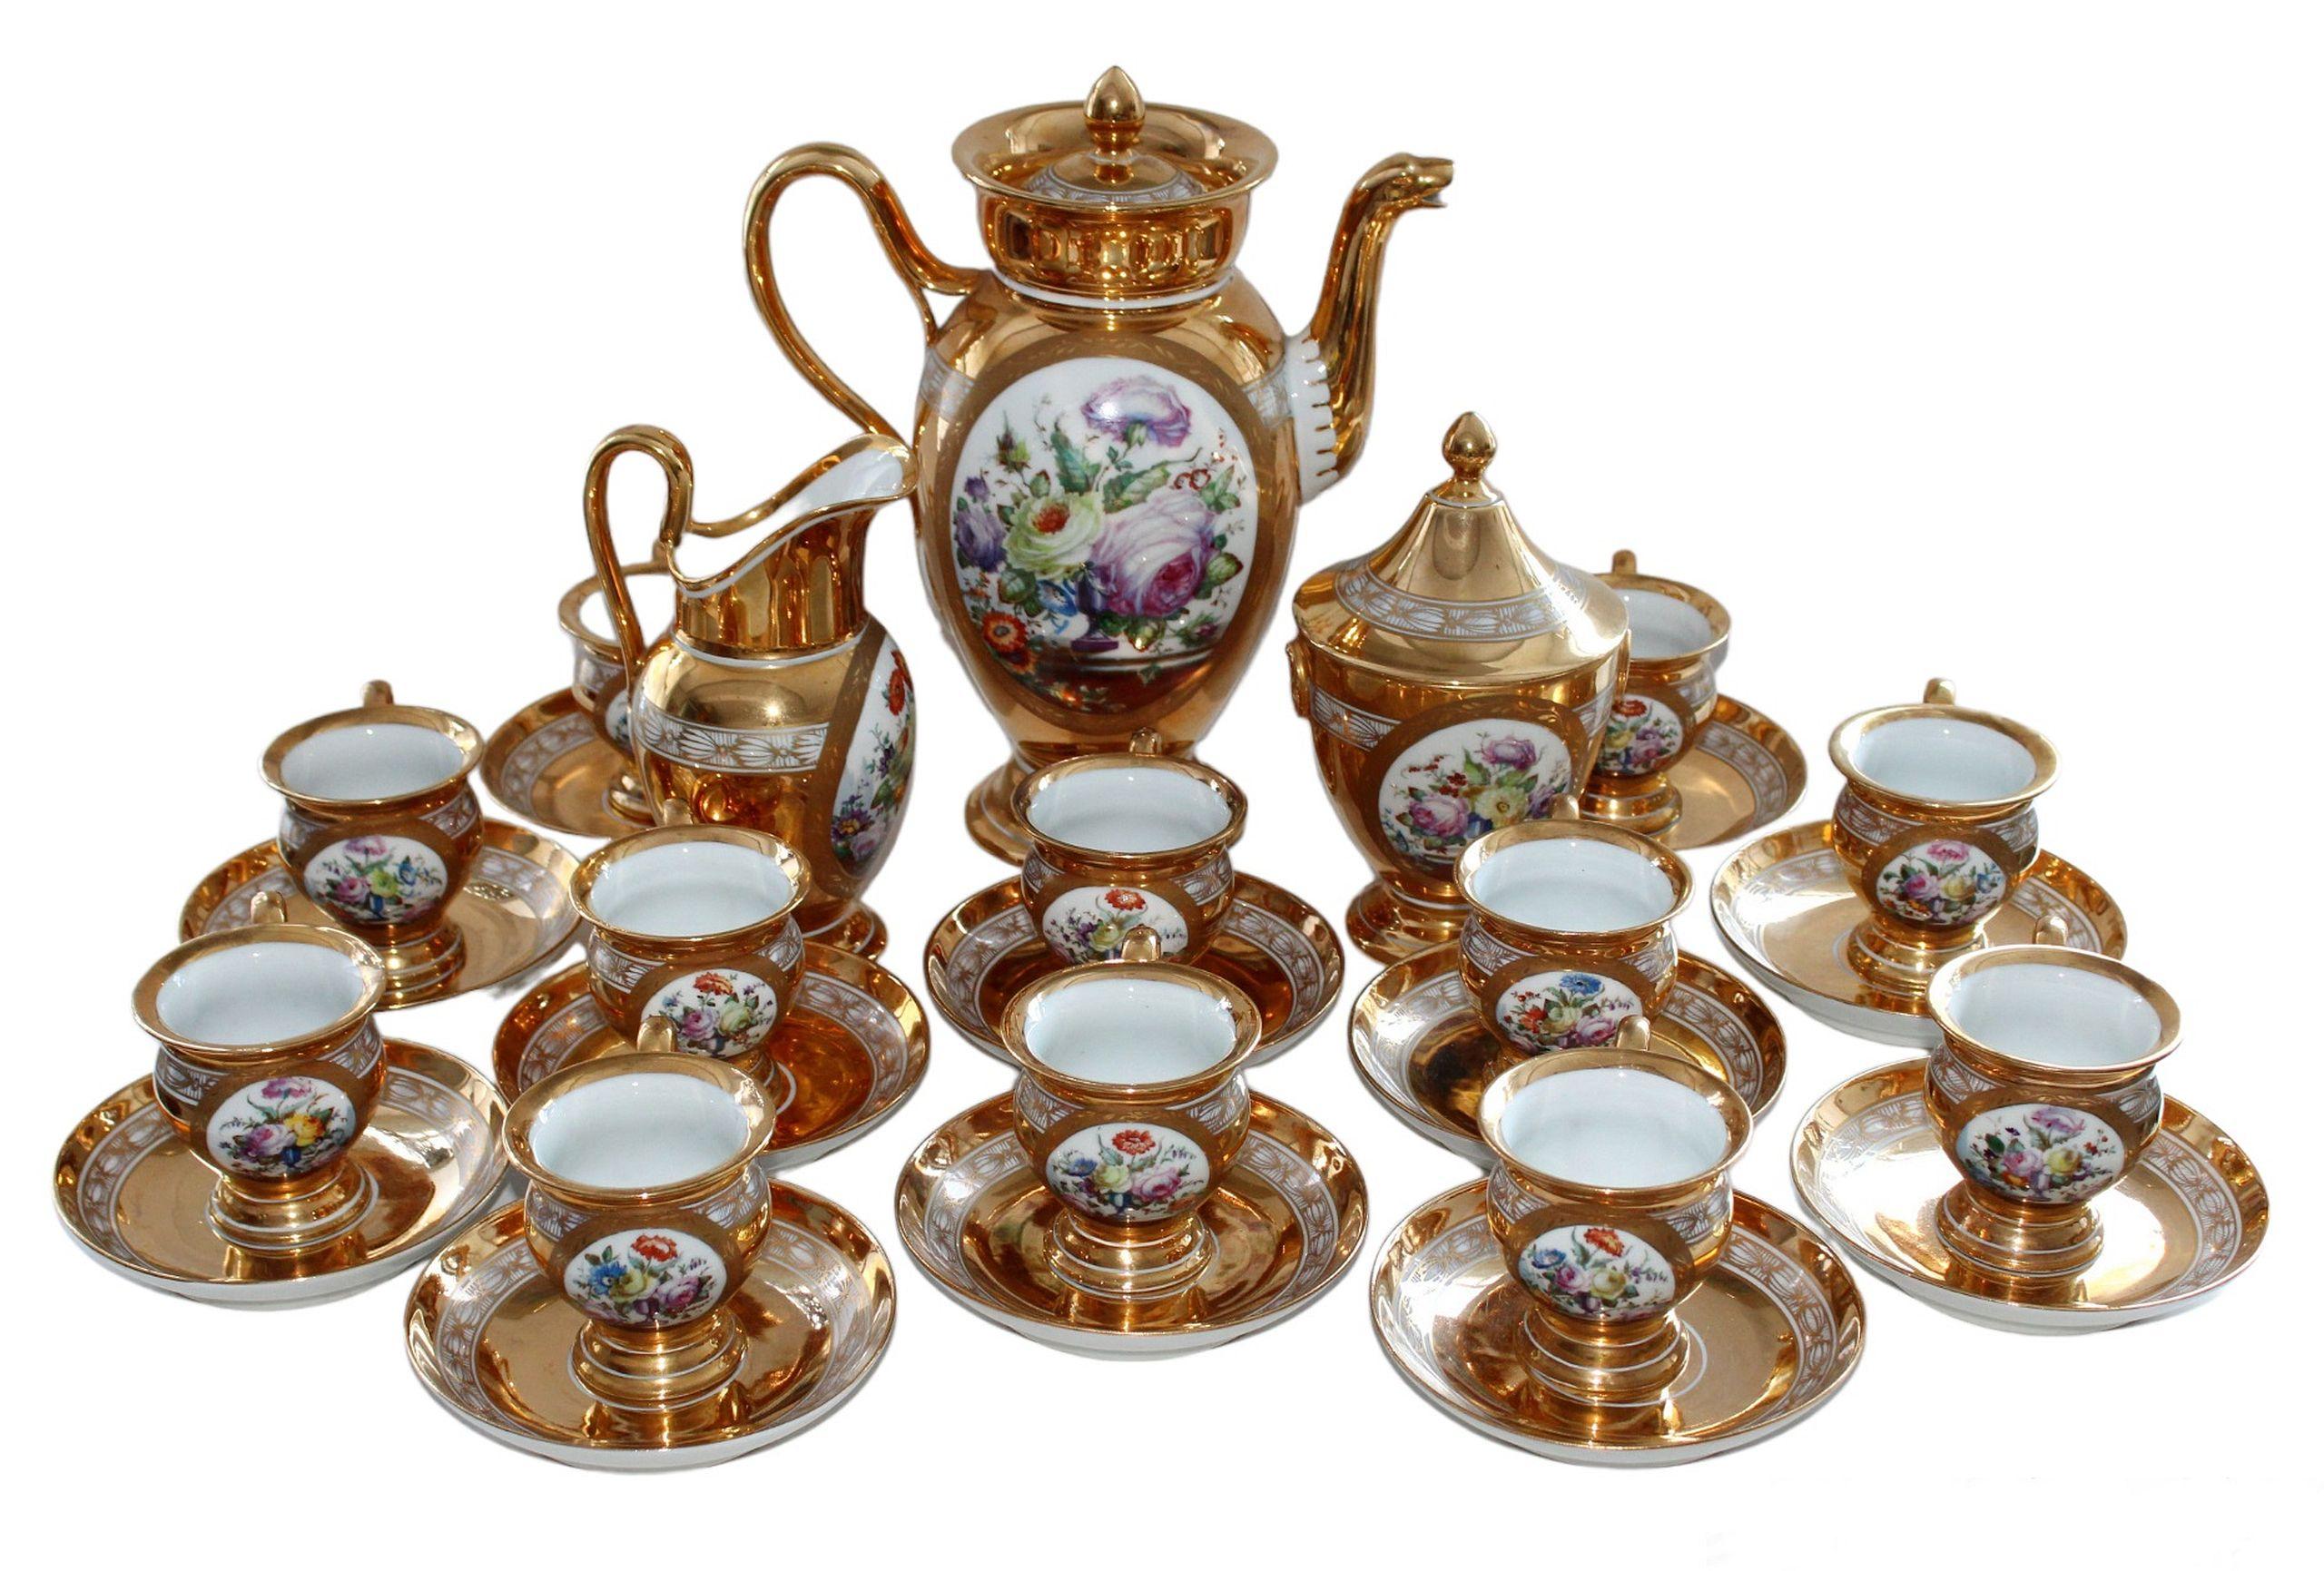 Tea Set for 12 persons 1949, porcelain, gilding, initials G.D. - Sculpture by Le Tallec